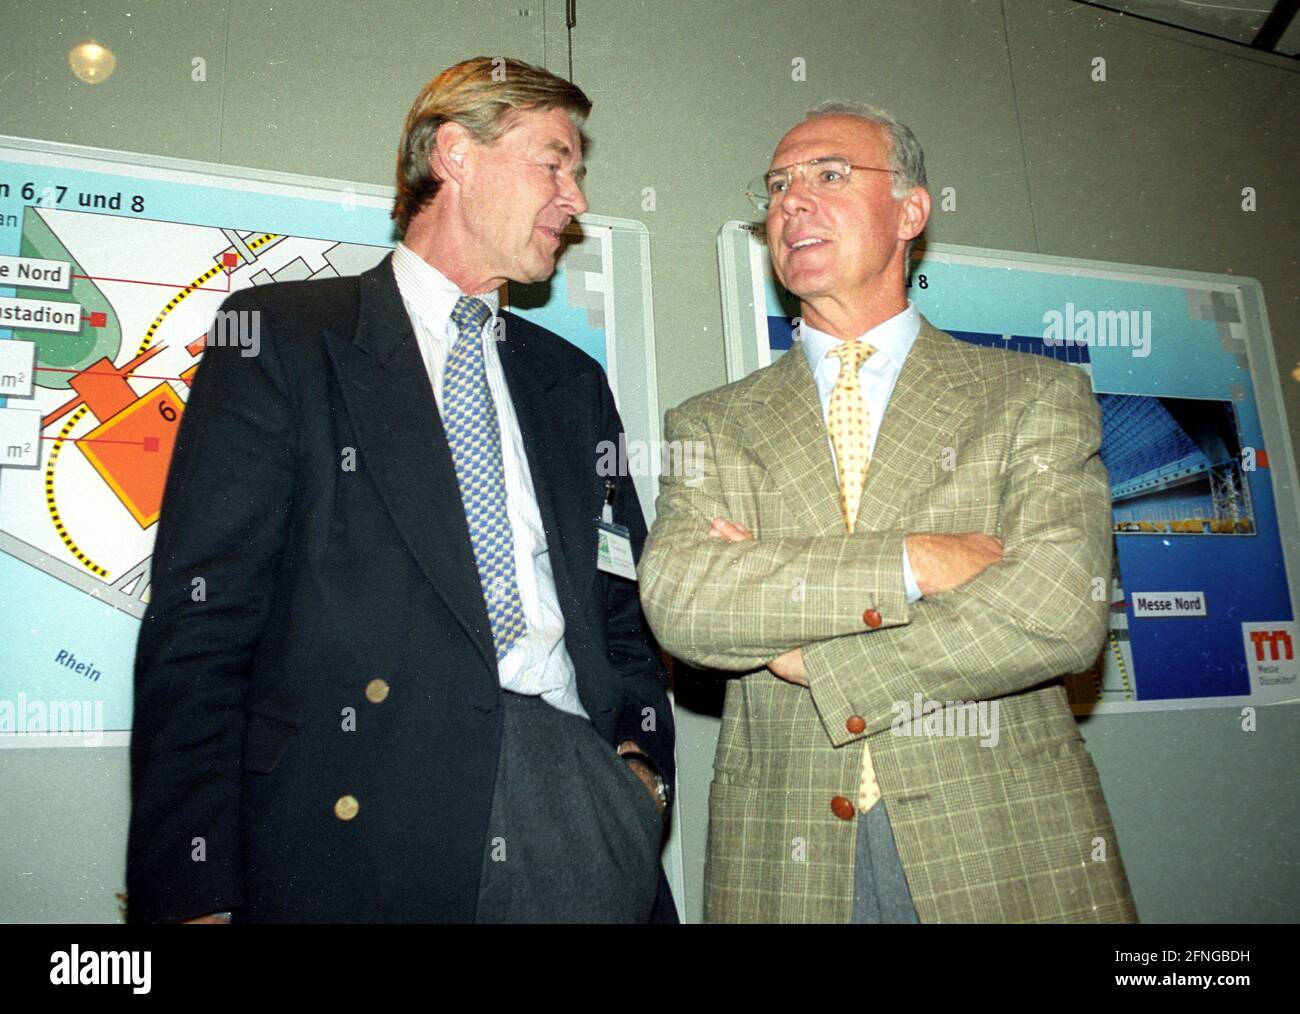 Inspection de la FIFA pour la coupe du monde 2006 à Düsseldorf 18.10.1999 : Horst Klosterkemper et Franz Beckenbauer [traduction automatique] Banque D'Images